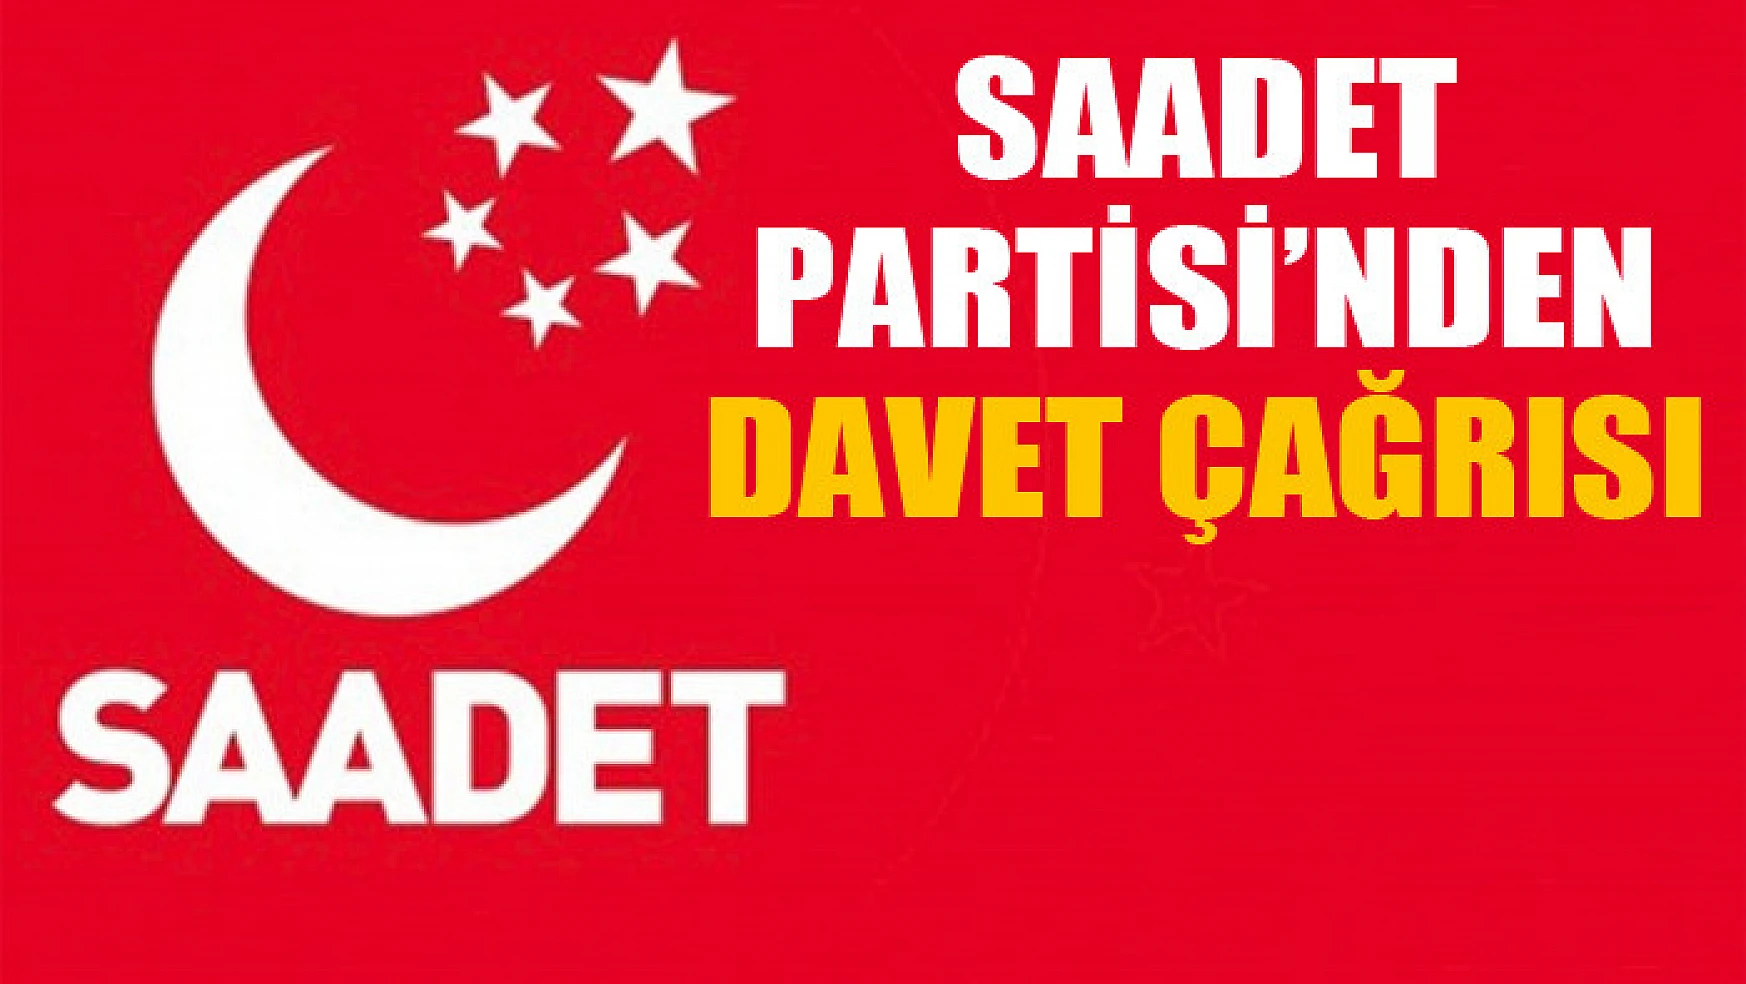 SAADET PARTİSİ'NDEN DAVET ÇAĞRISI